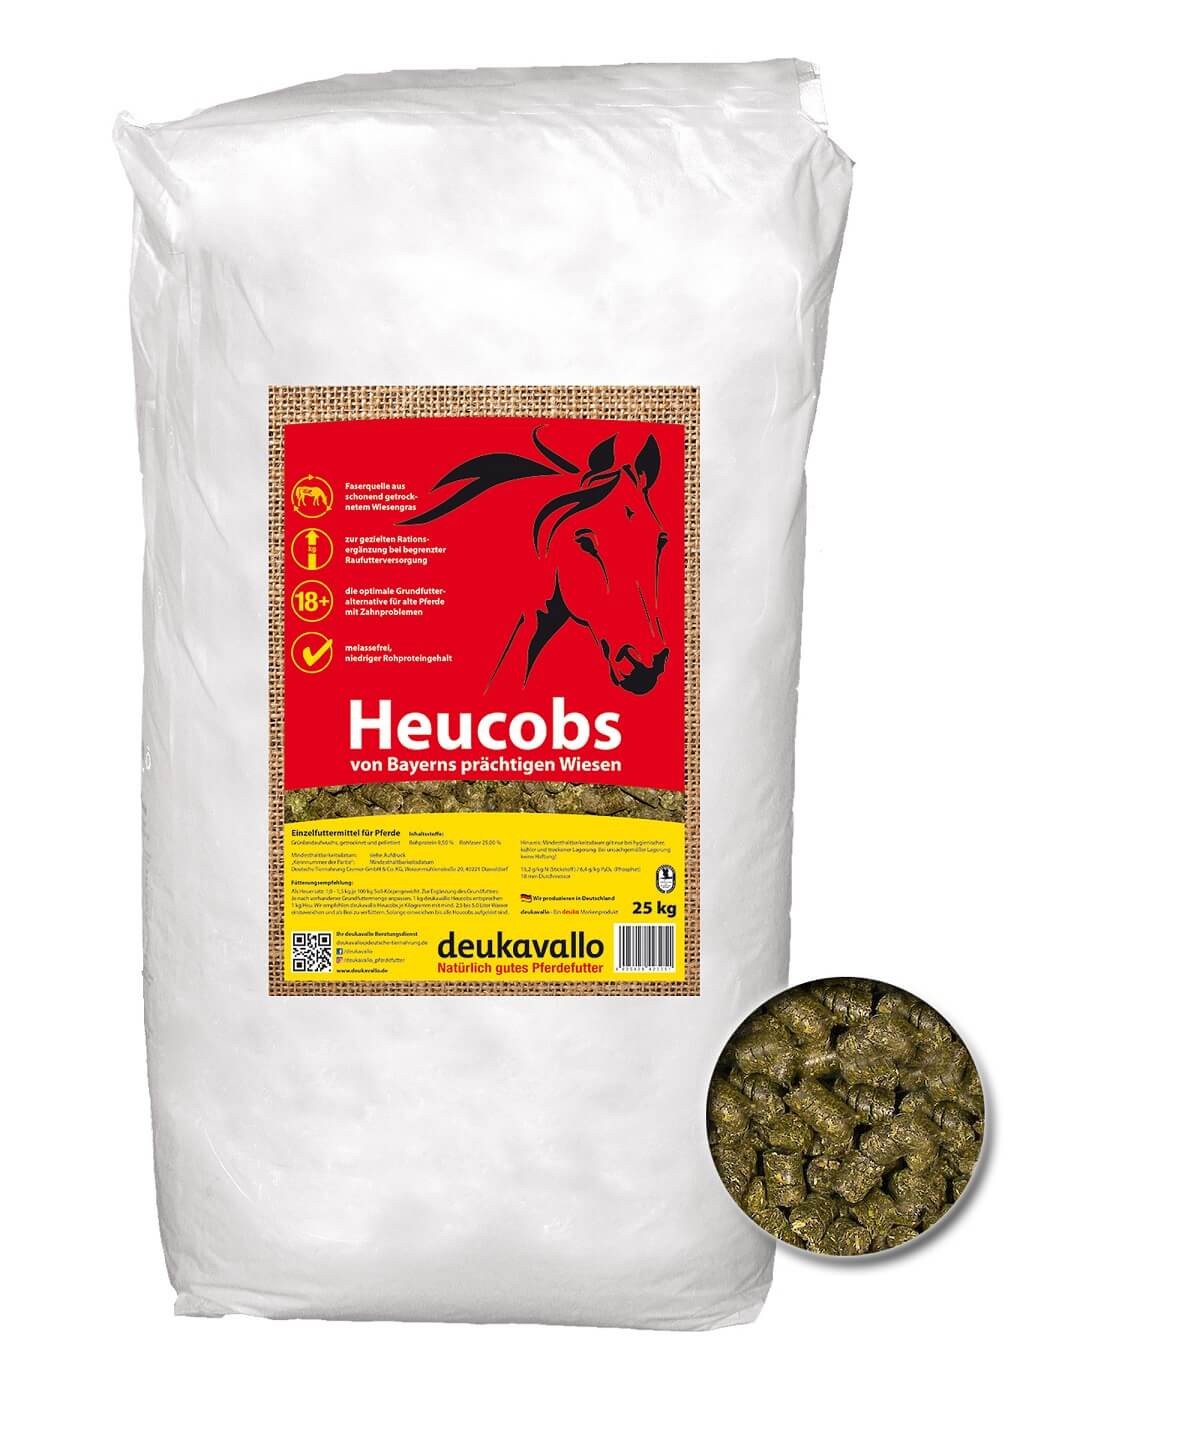 DEUKAVALLO Heucobs 25 kg - ideal als Heuergänzer oder Heuersatz